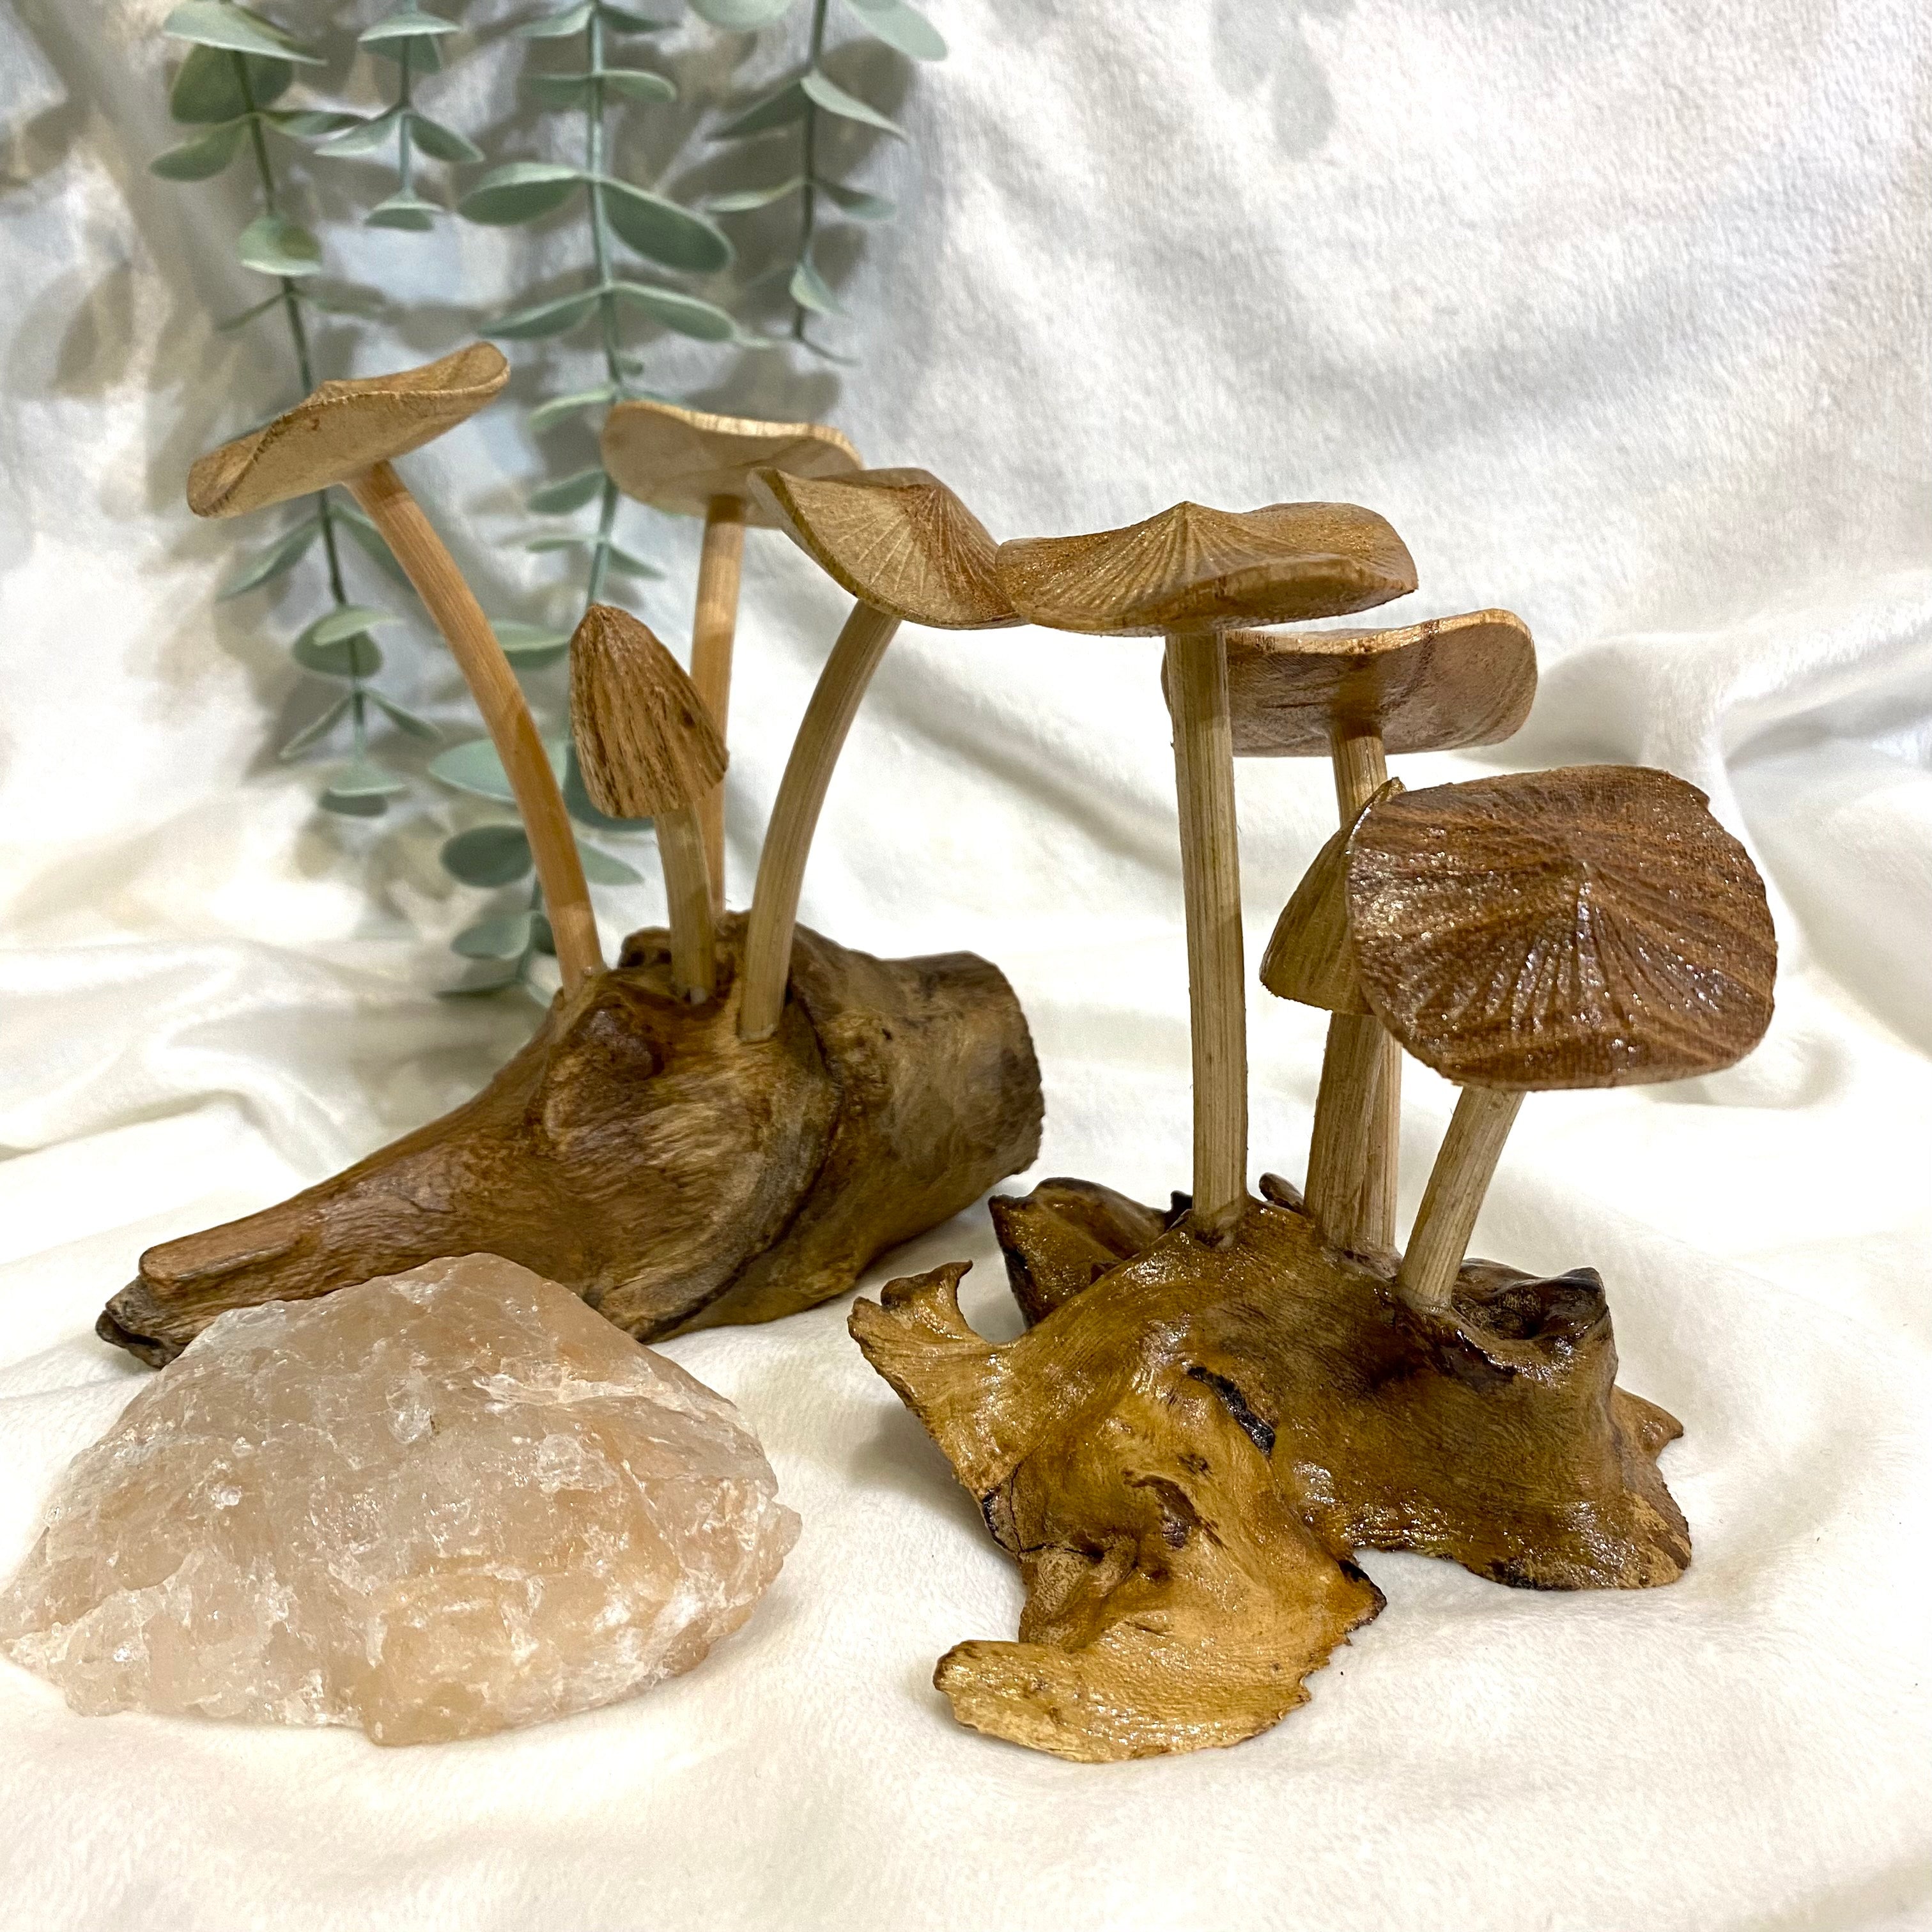 Wooden Mushroom Carvings - Various Sizes